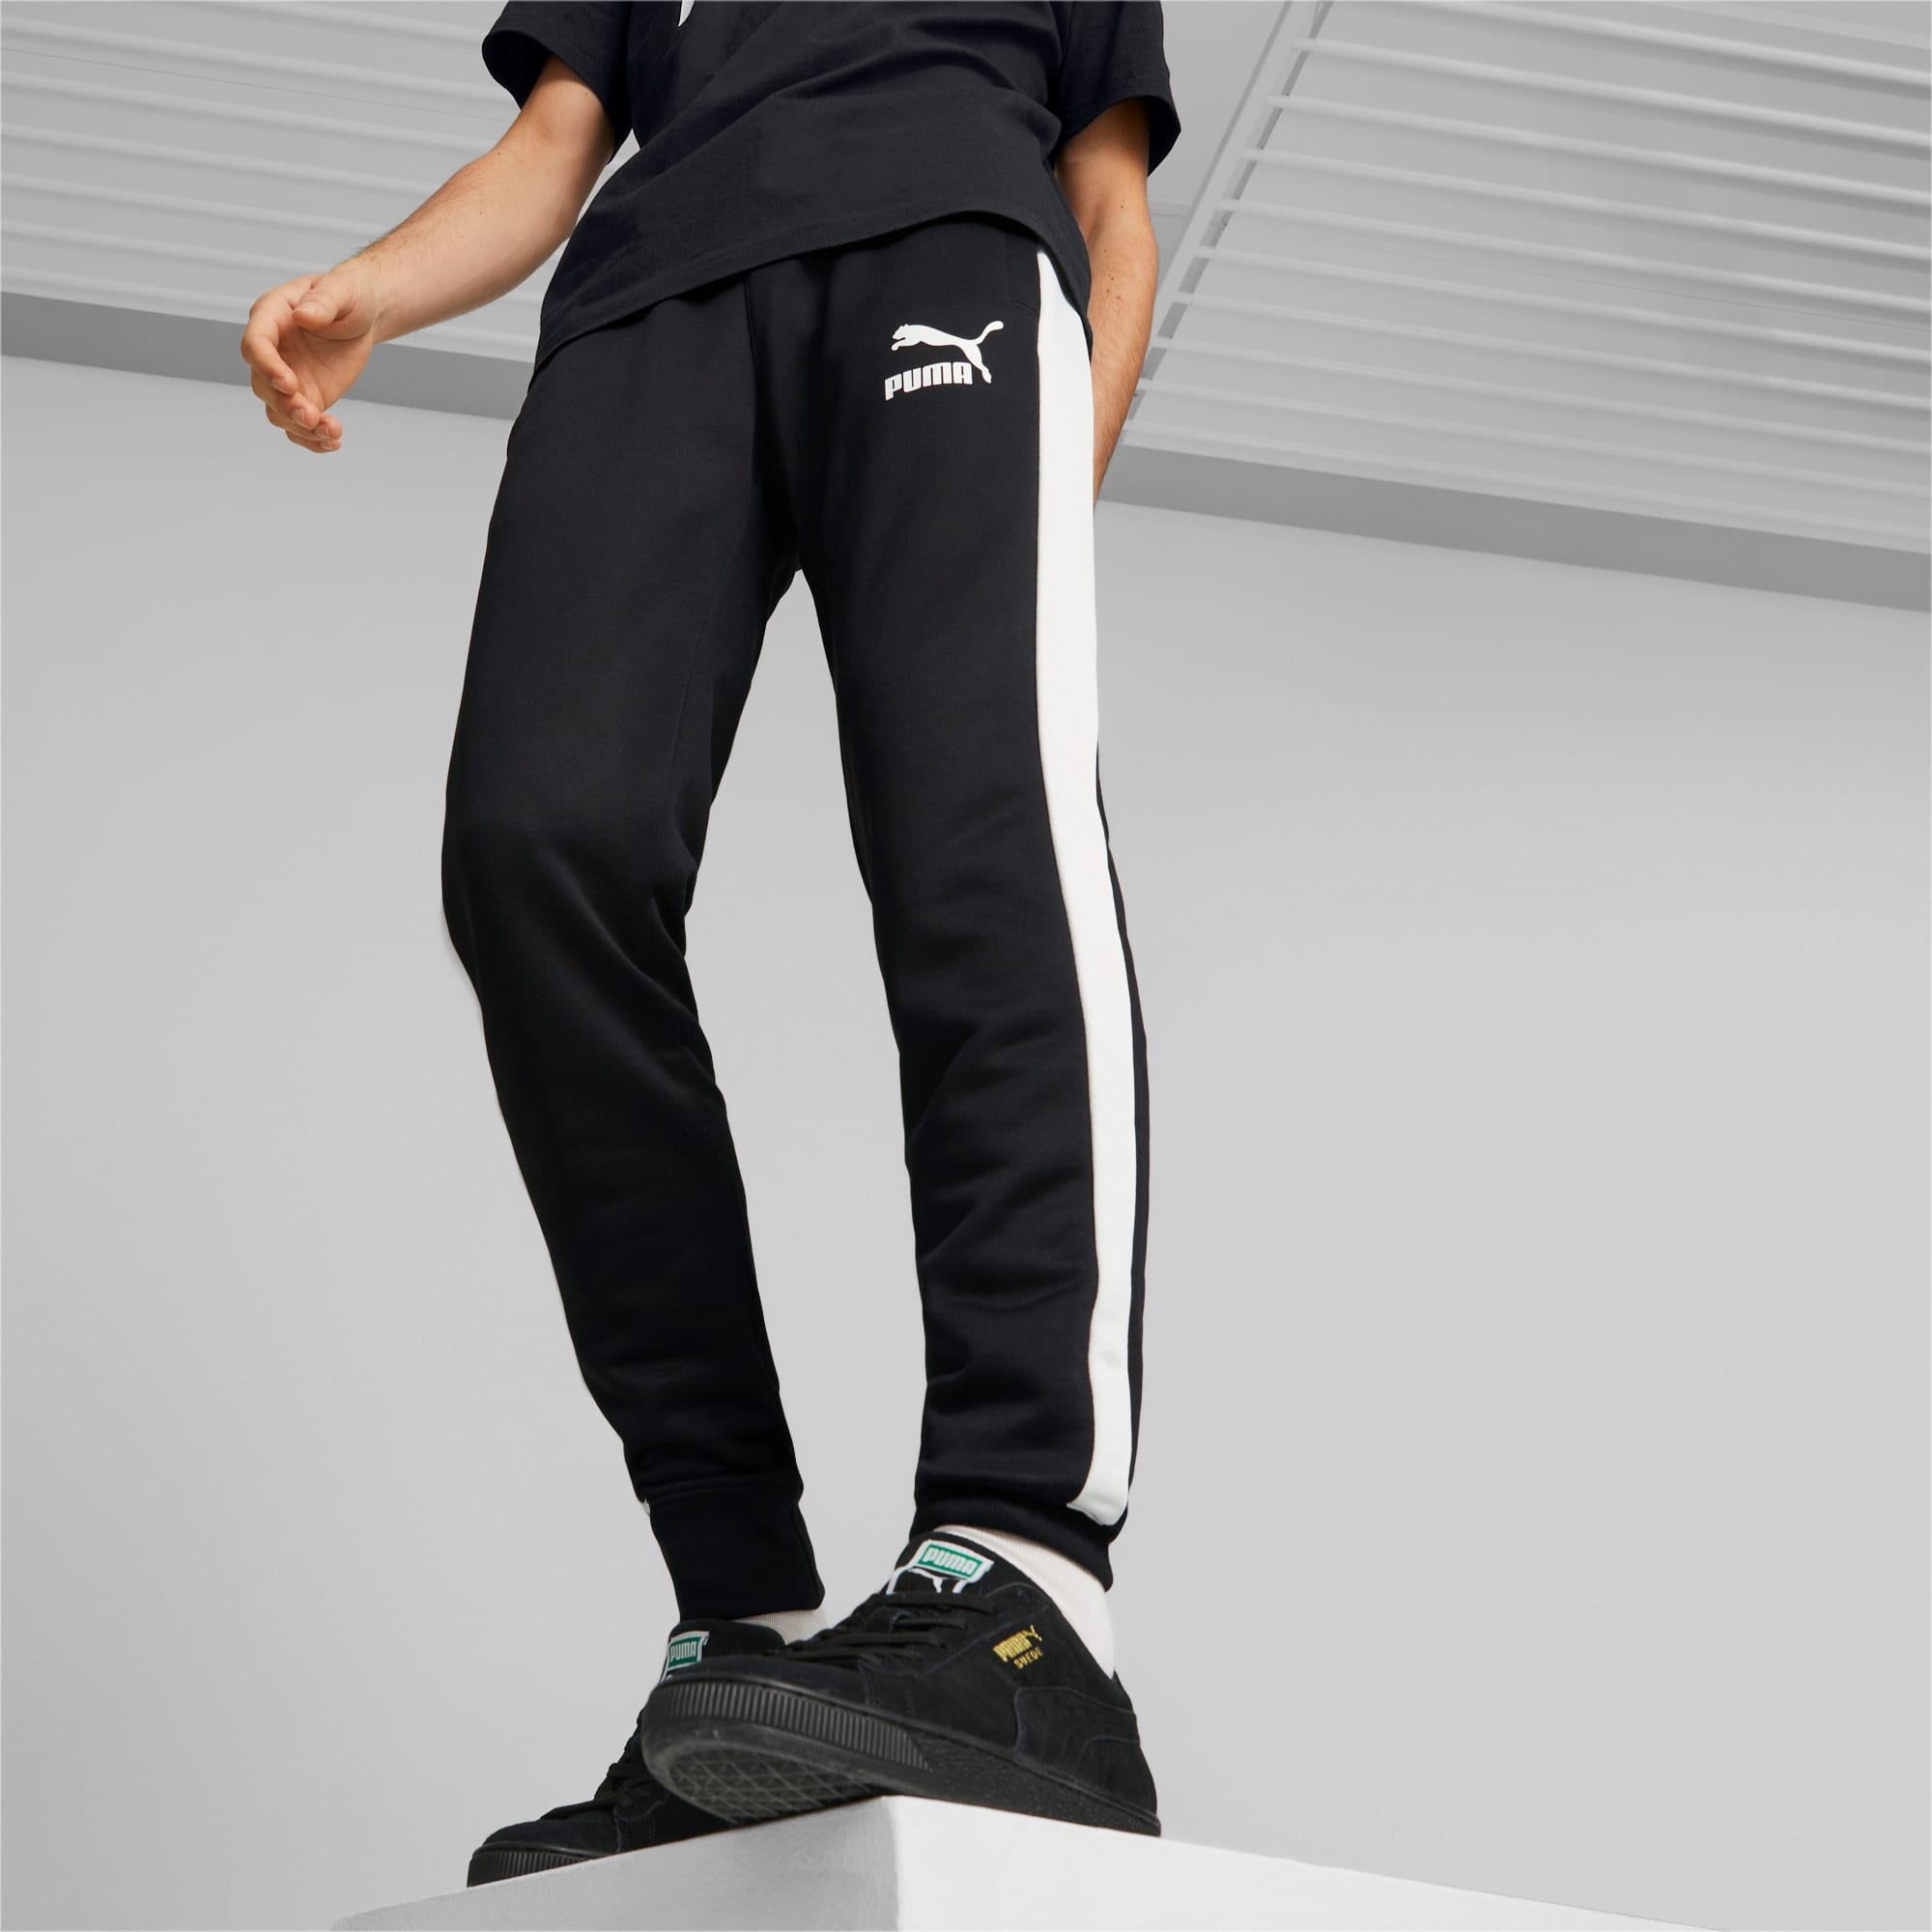 Jogging Puma T7 Iconic Homme - Puma - Pantalons d'entraînement - Teamwear